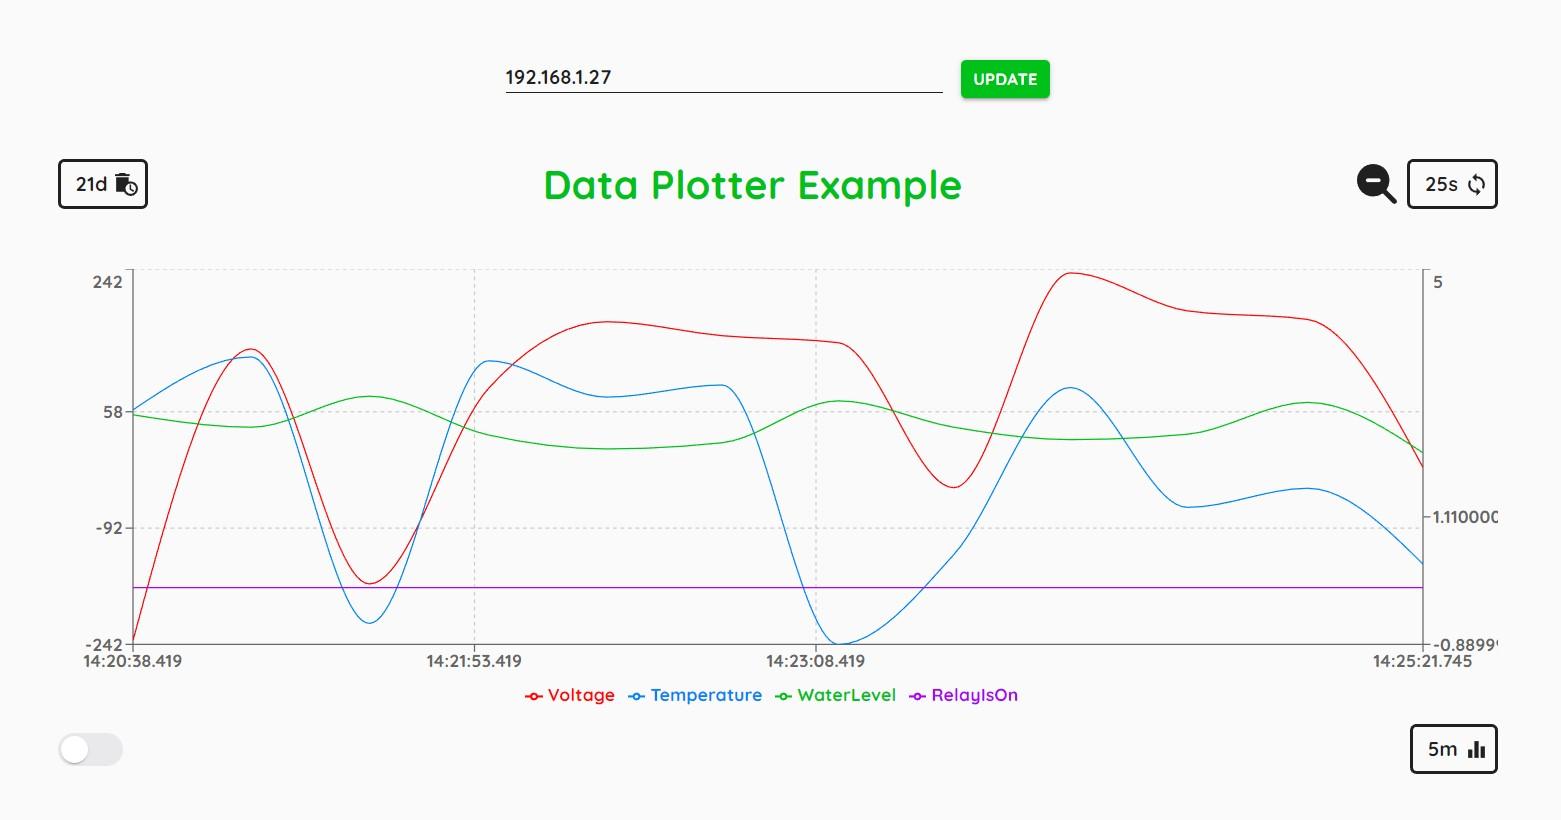 Data Plotter